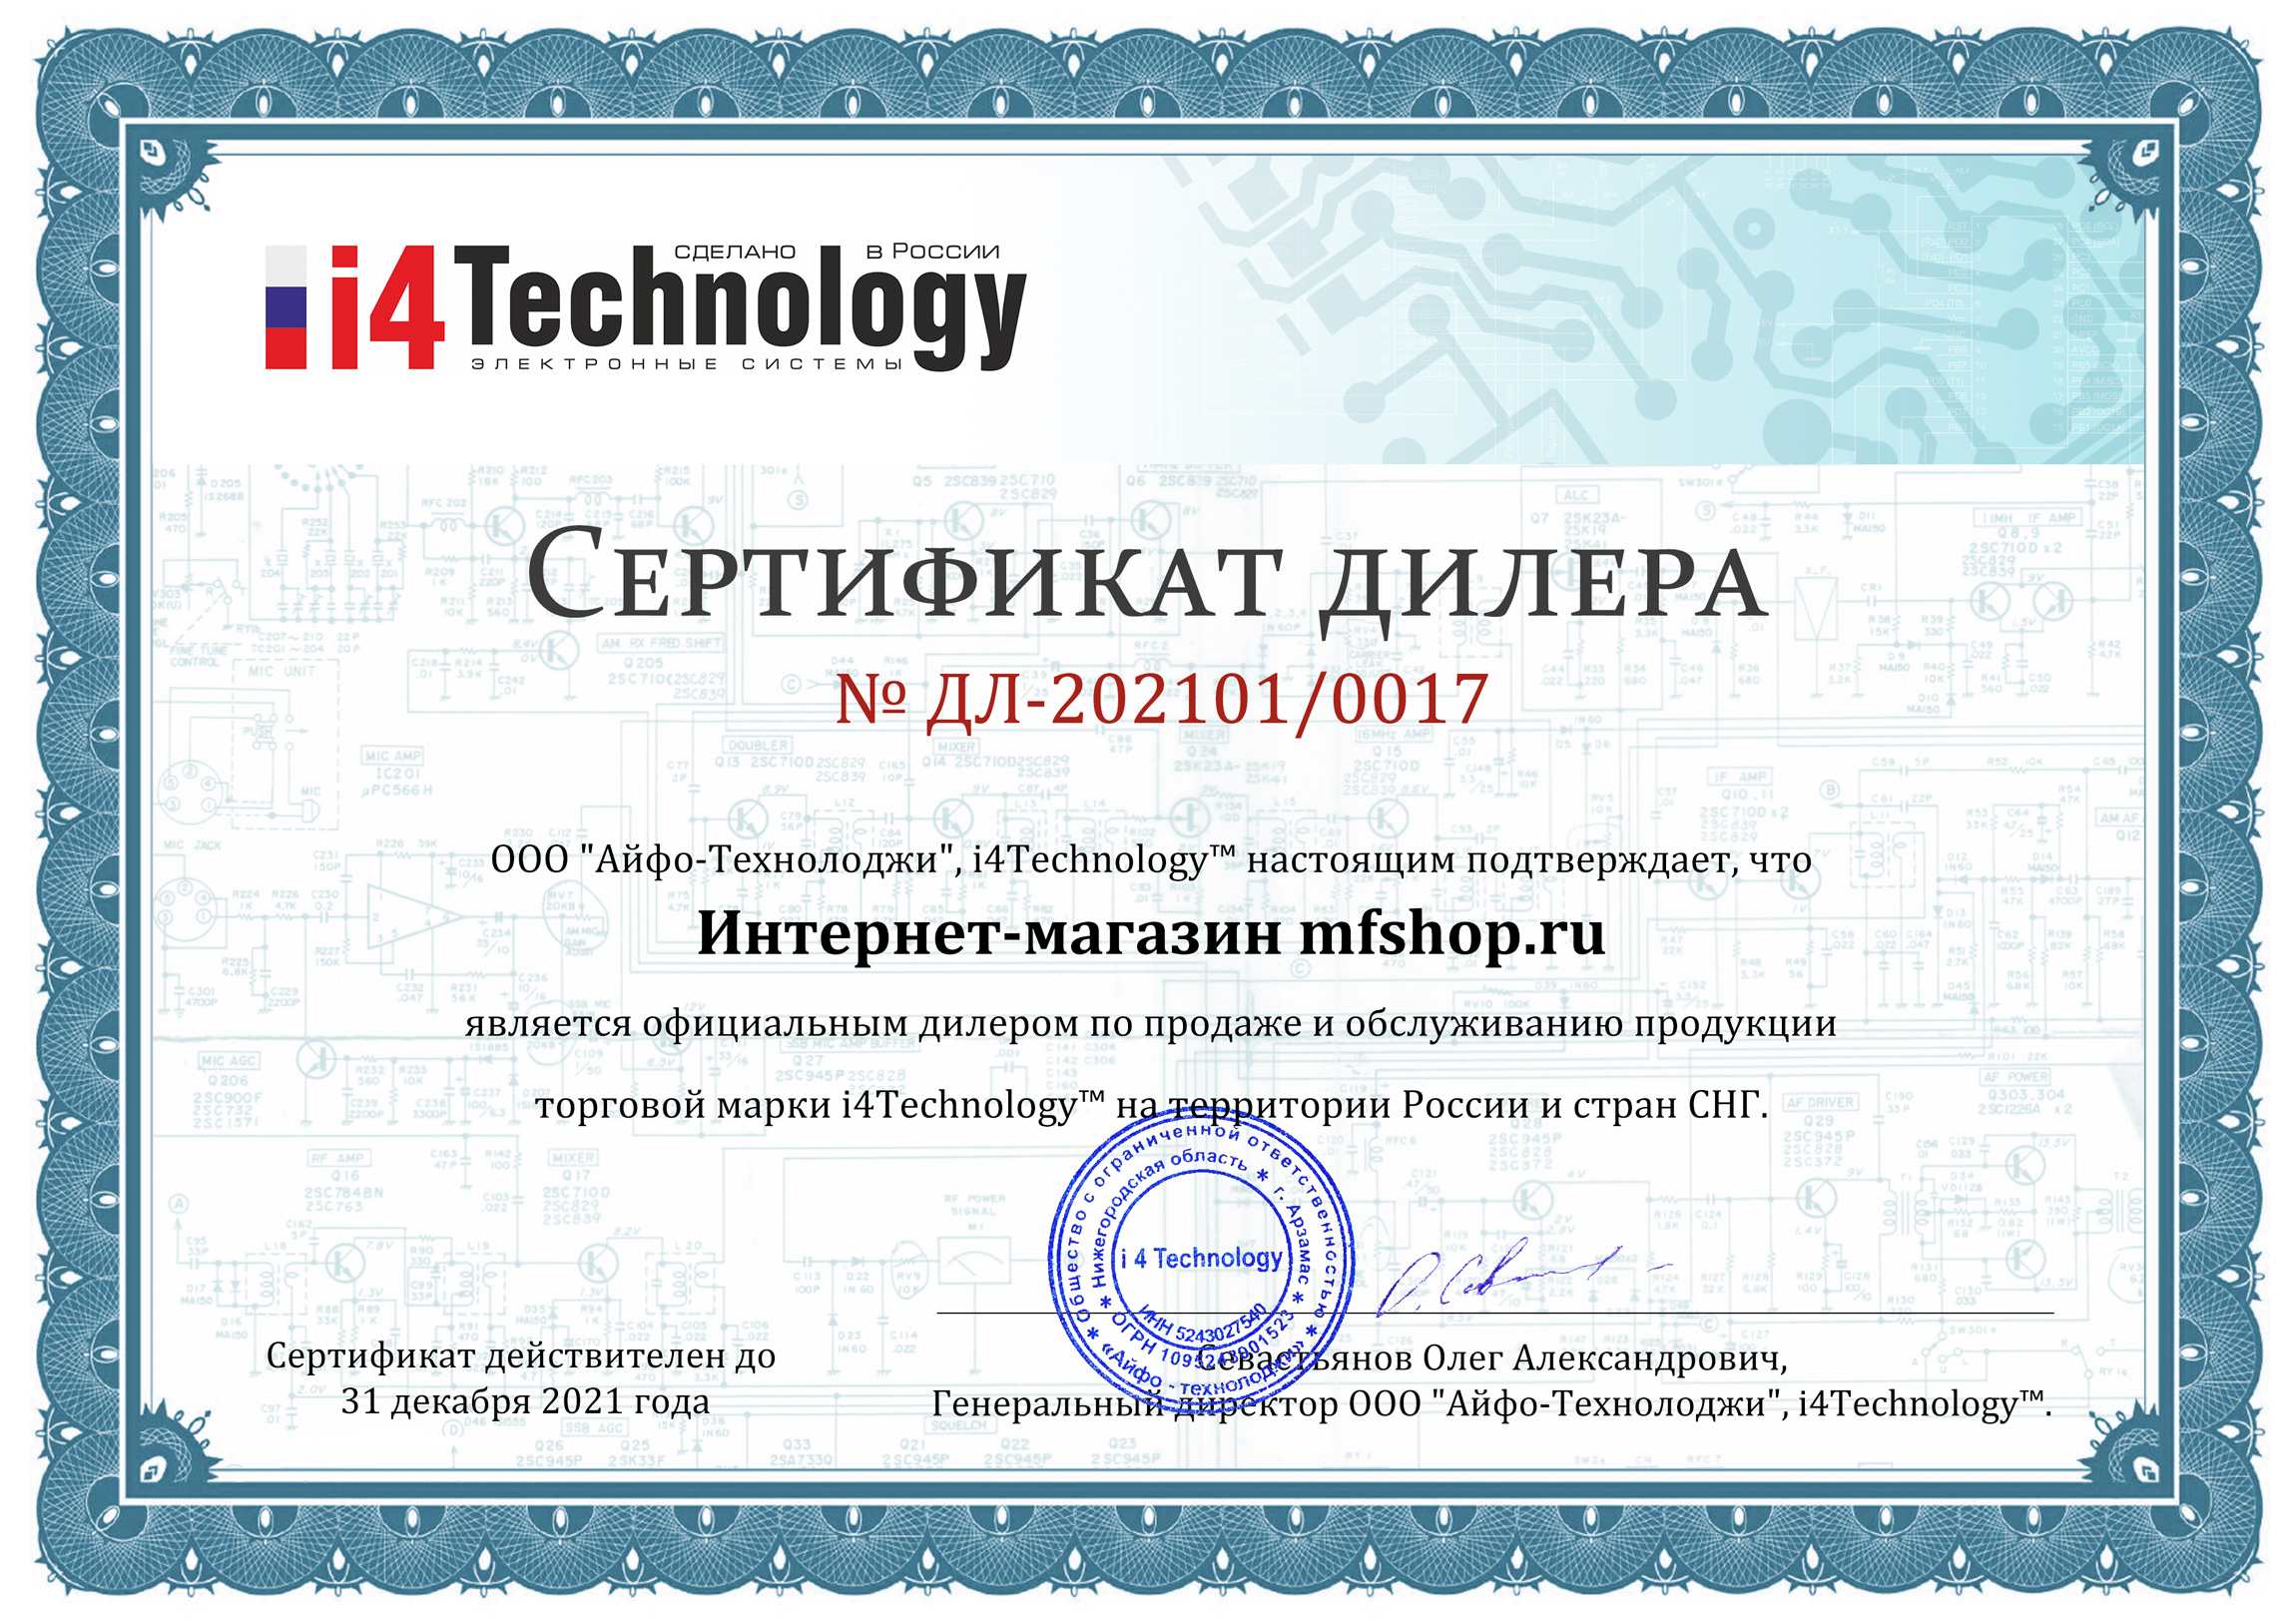 Наш магазин является официальным дилером продукции марки i4Technology и имеет соответствующий сертификат (нажмите для увеличения)